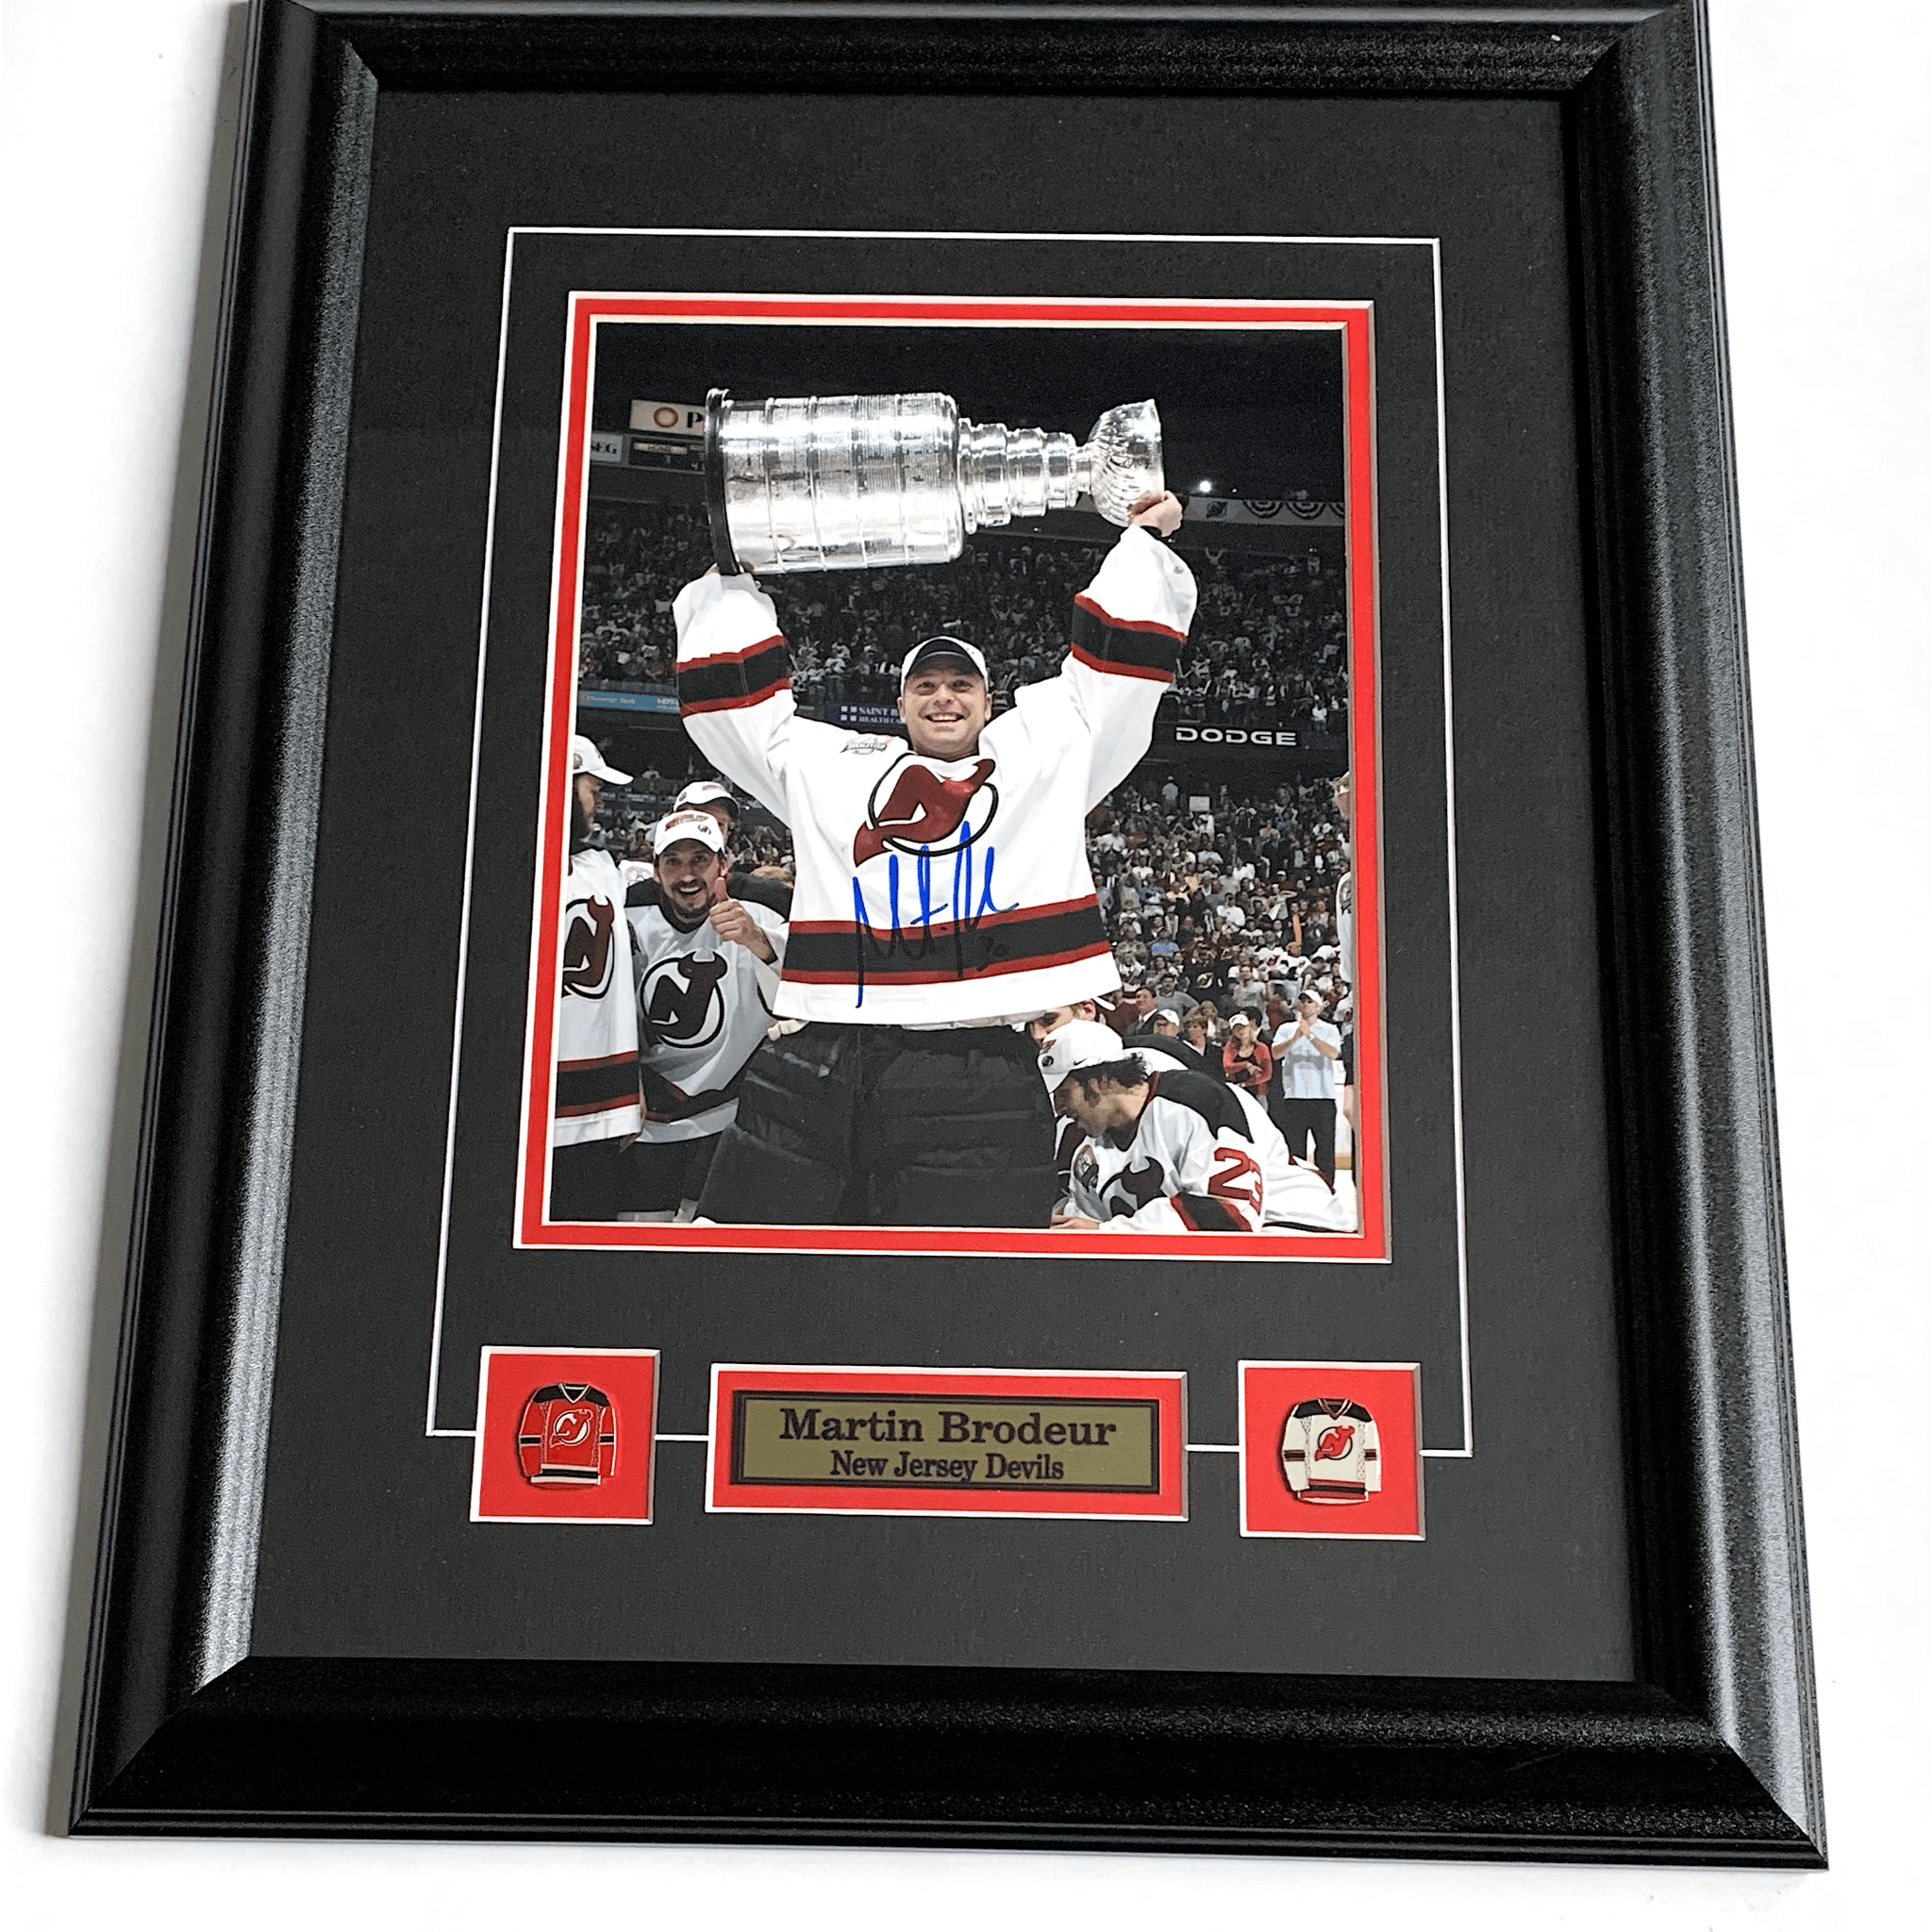 Martin Brodeur New Jersey Devils Autographed Framed